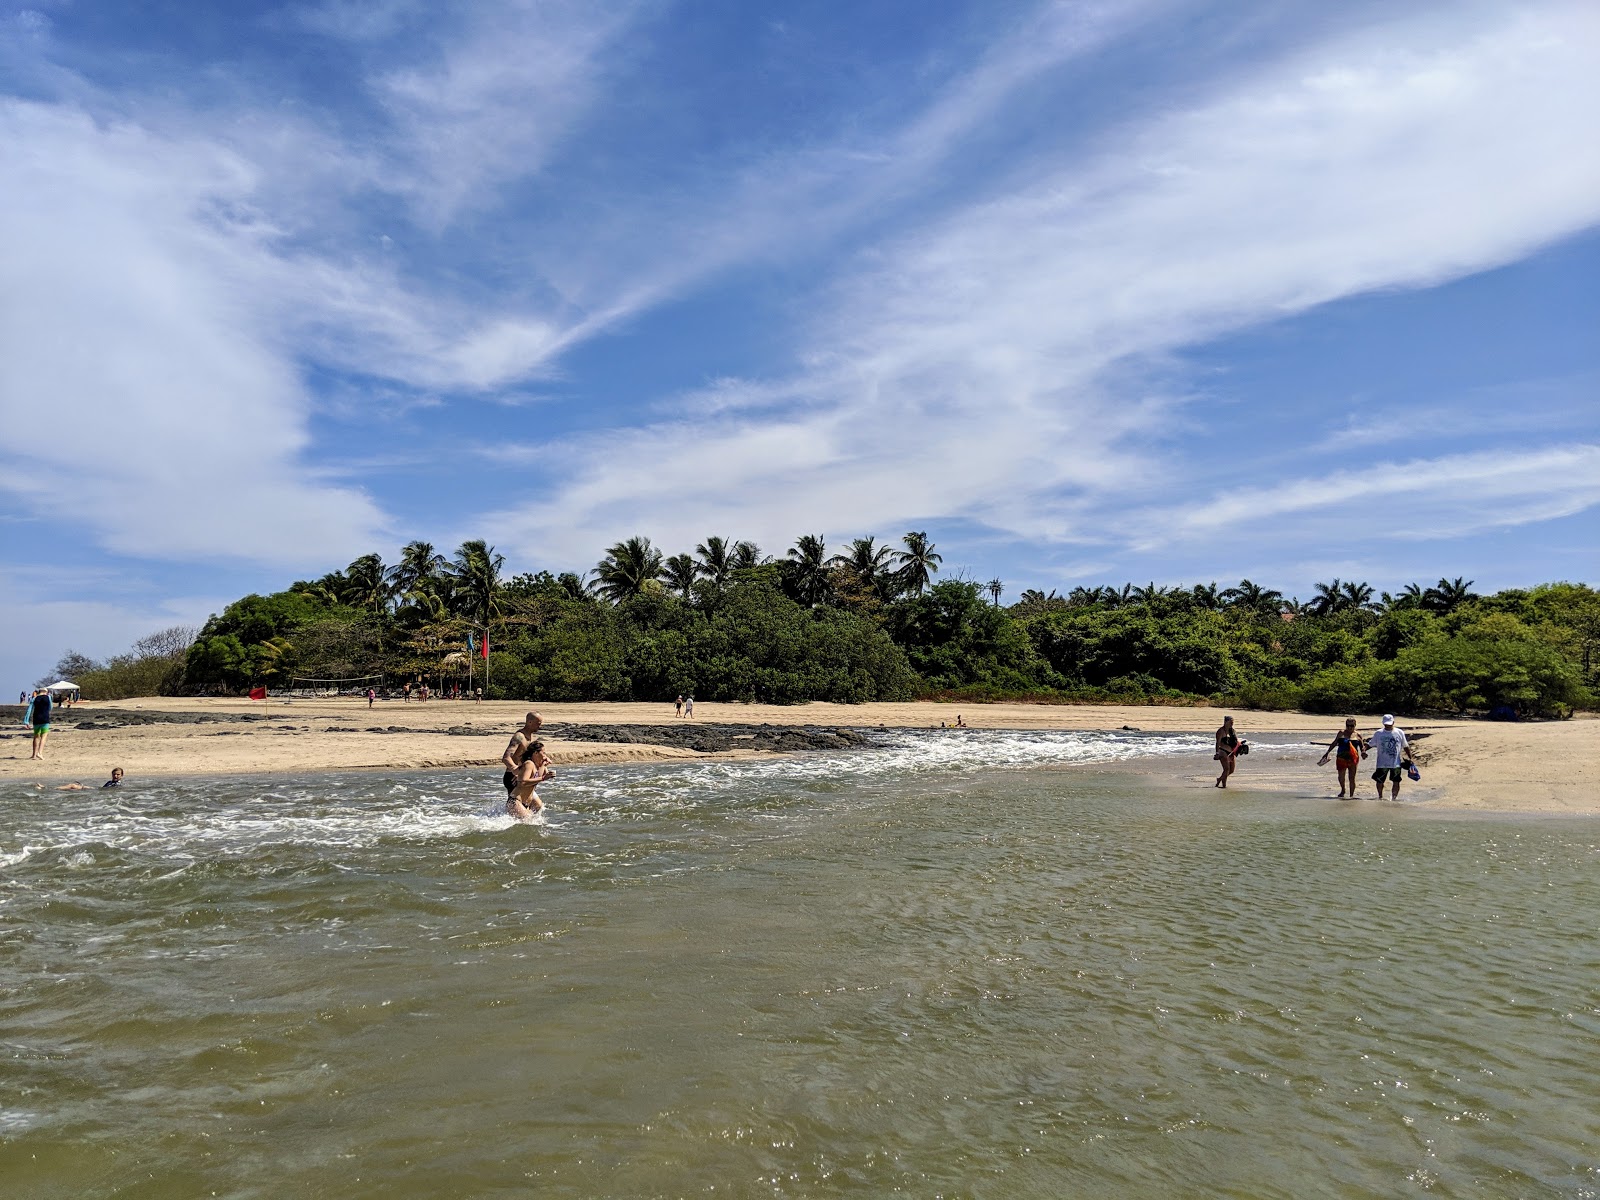 Playa Langosta'in fotoğrafı imkanlar alanı